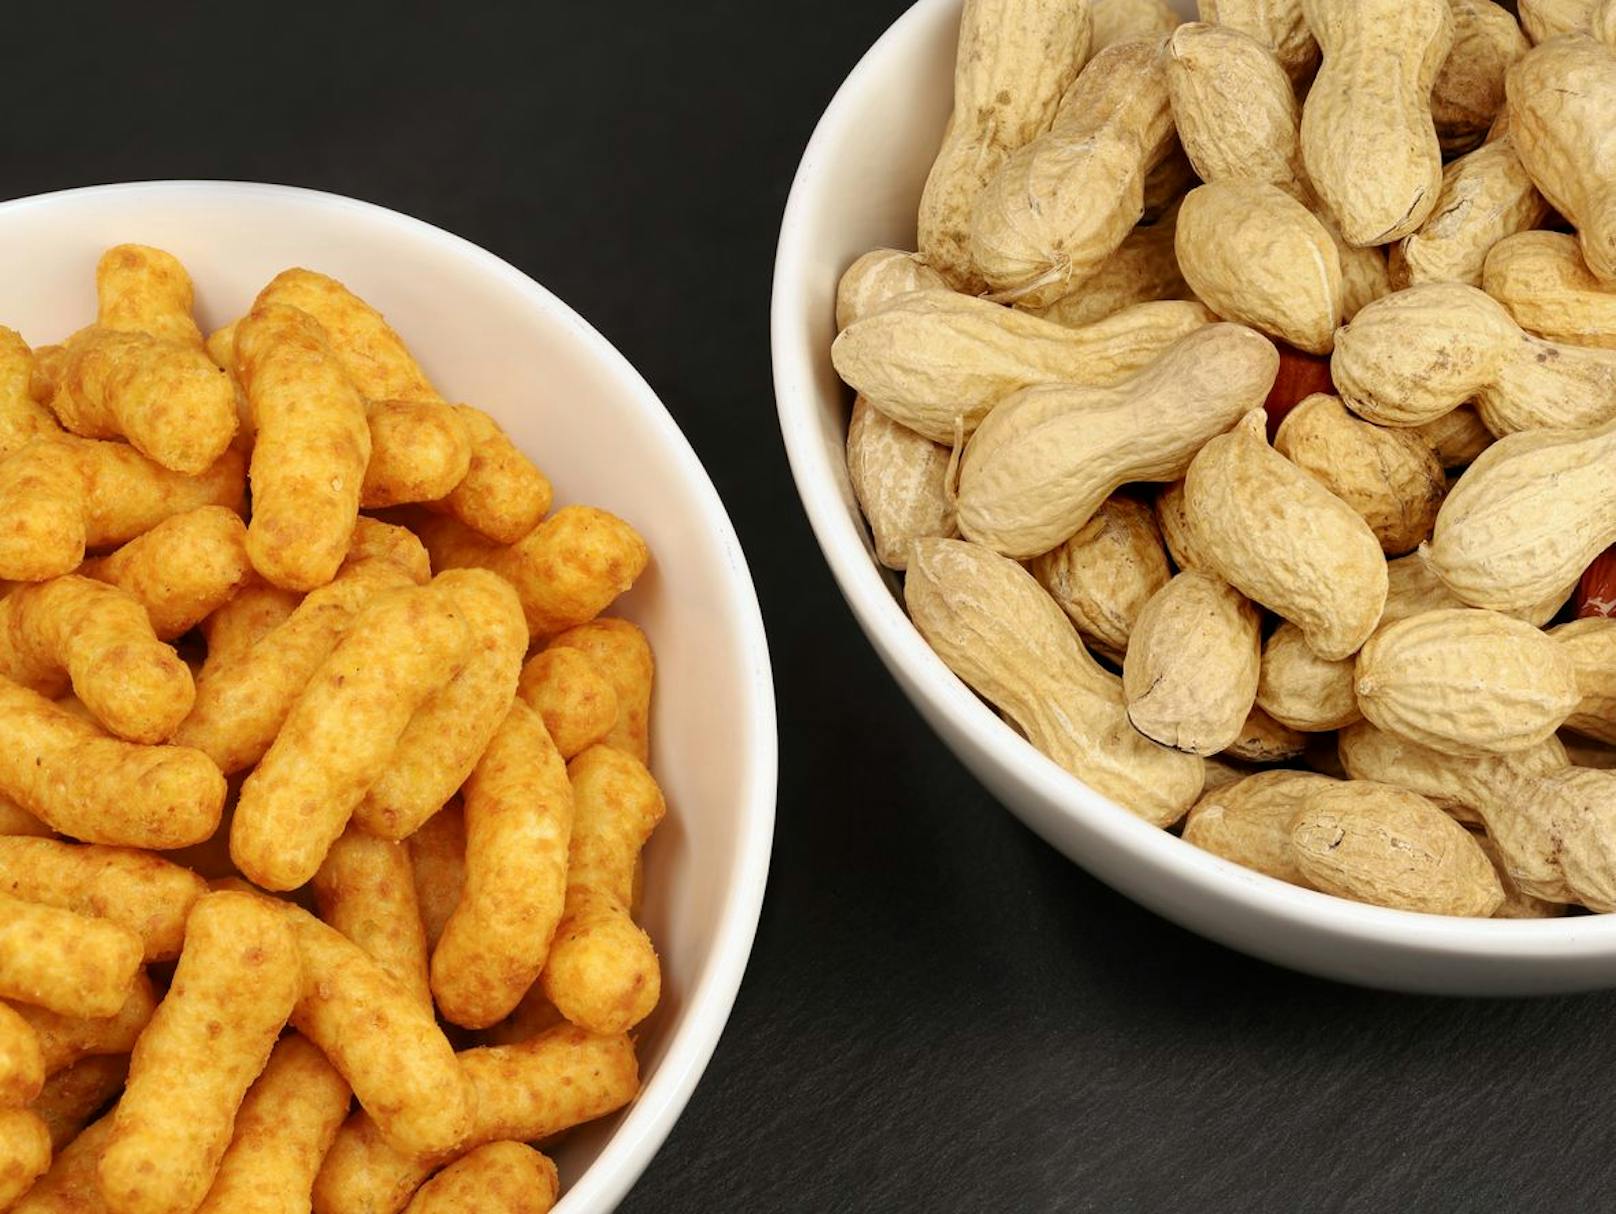 Erdnüsse sind in auch in vielen Lebensmitteln enthalten, wo man sie nicht vermutet. Deshalb müssen Allergiker die&nbsp;Liste der Inhaltsstoffe von Lebensmitteln genau kontrollieren.